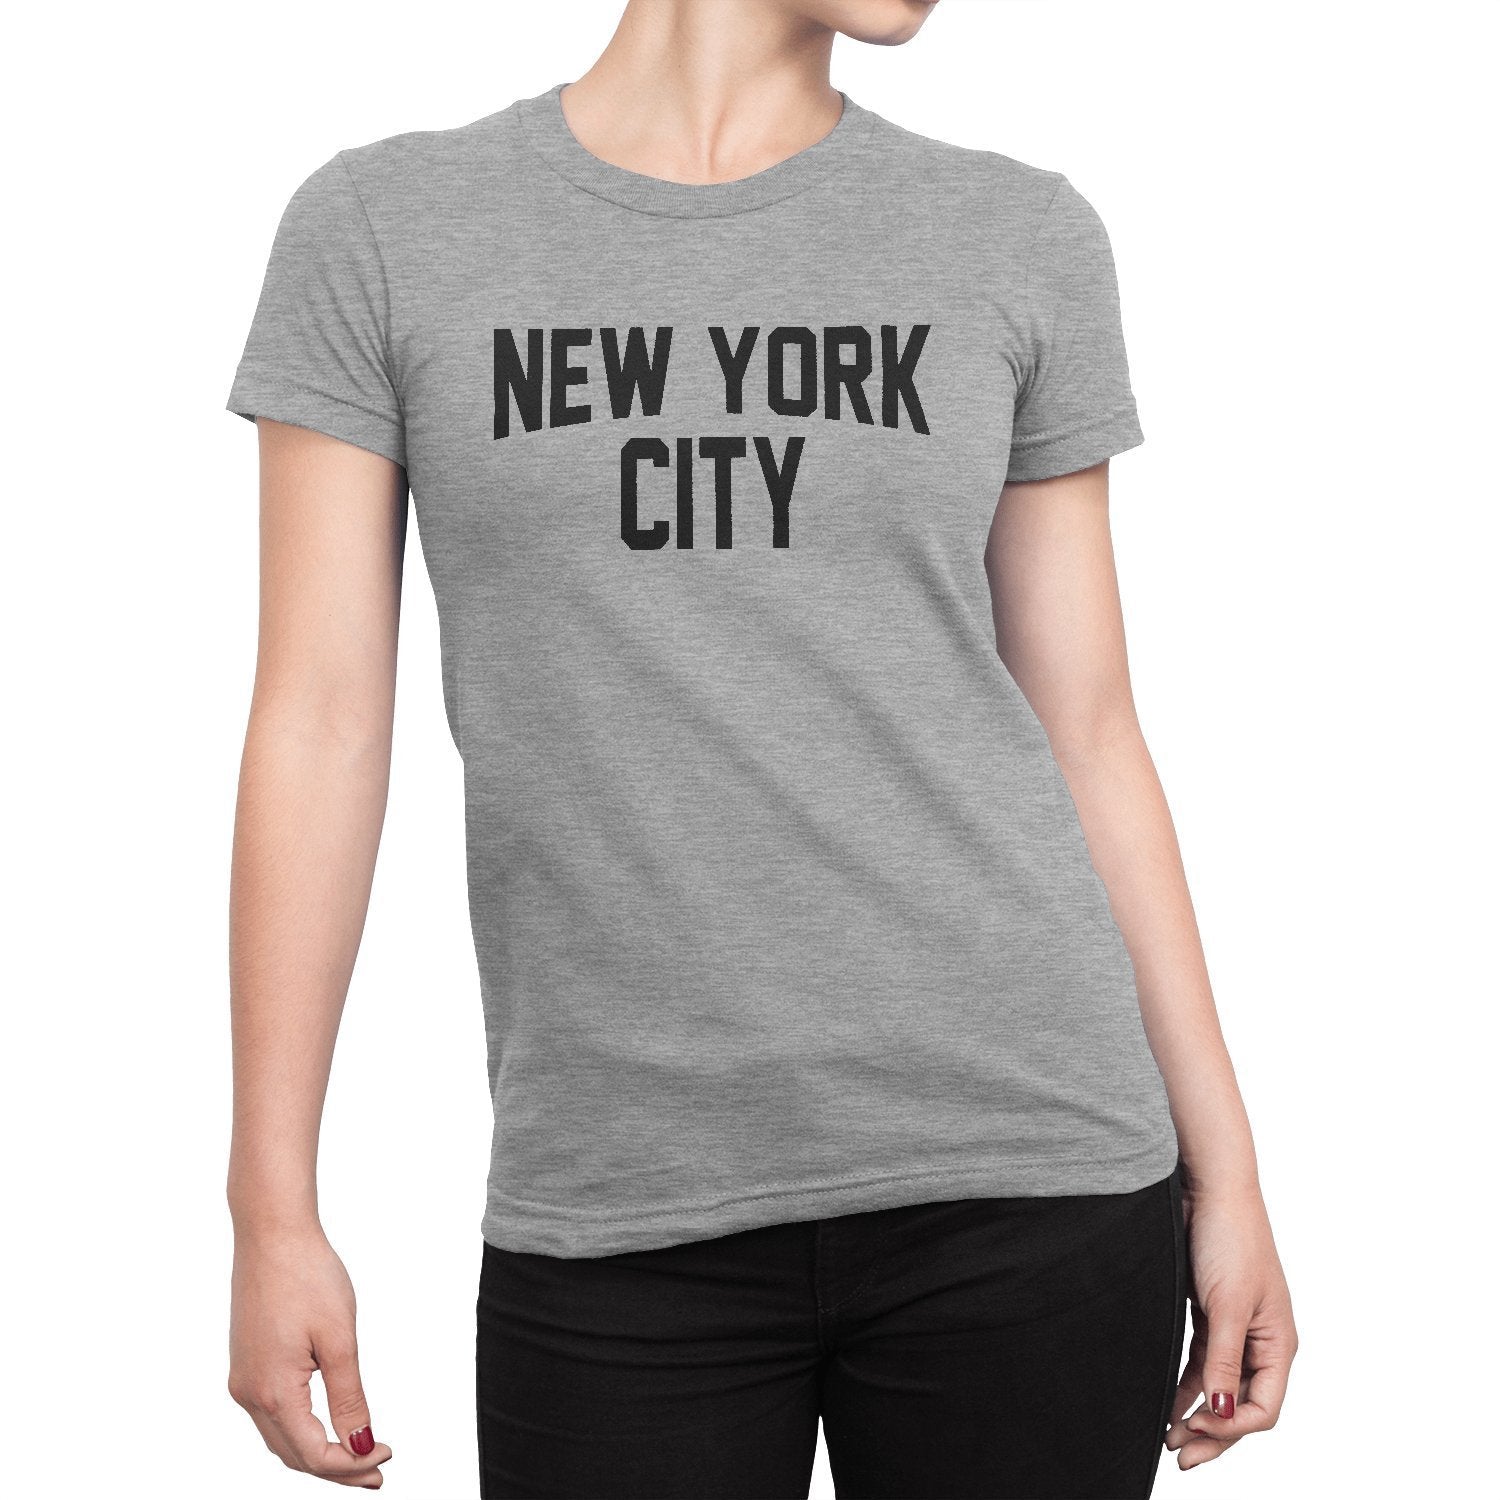 Men's New York City John Lennon Ringer Tee T-Shirt (Gray/Black, Regula